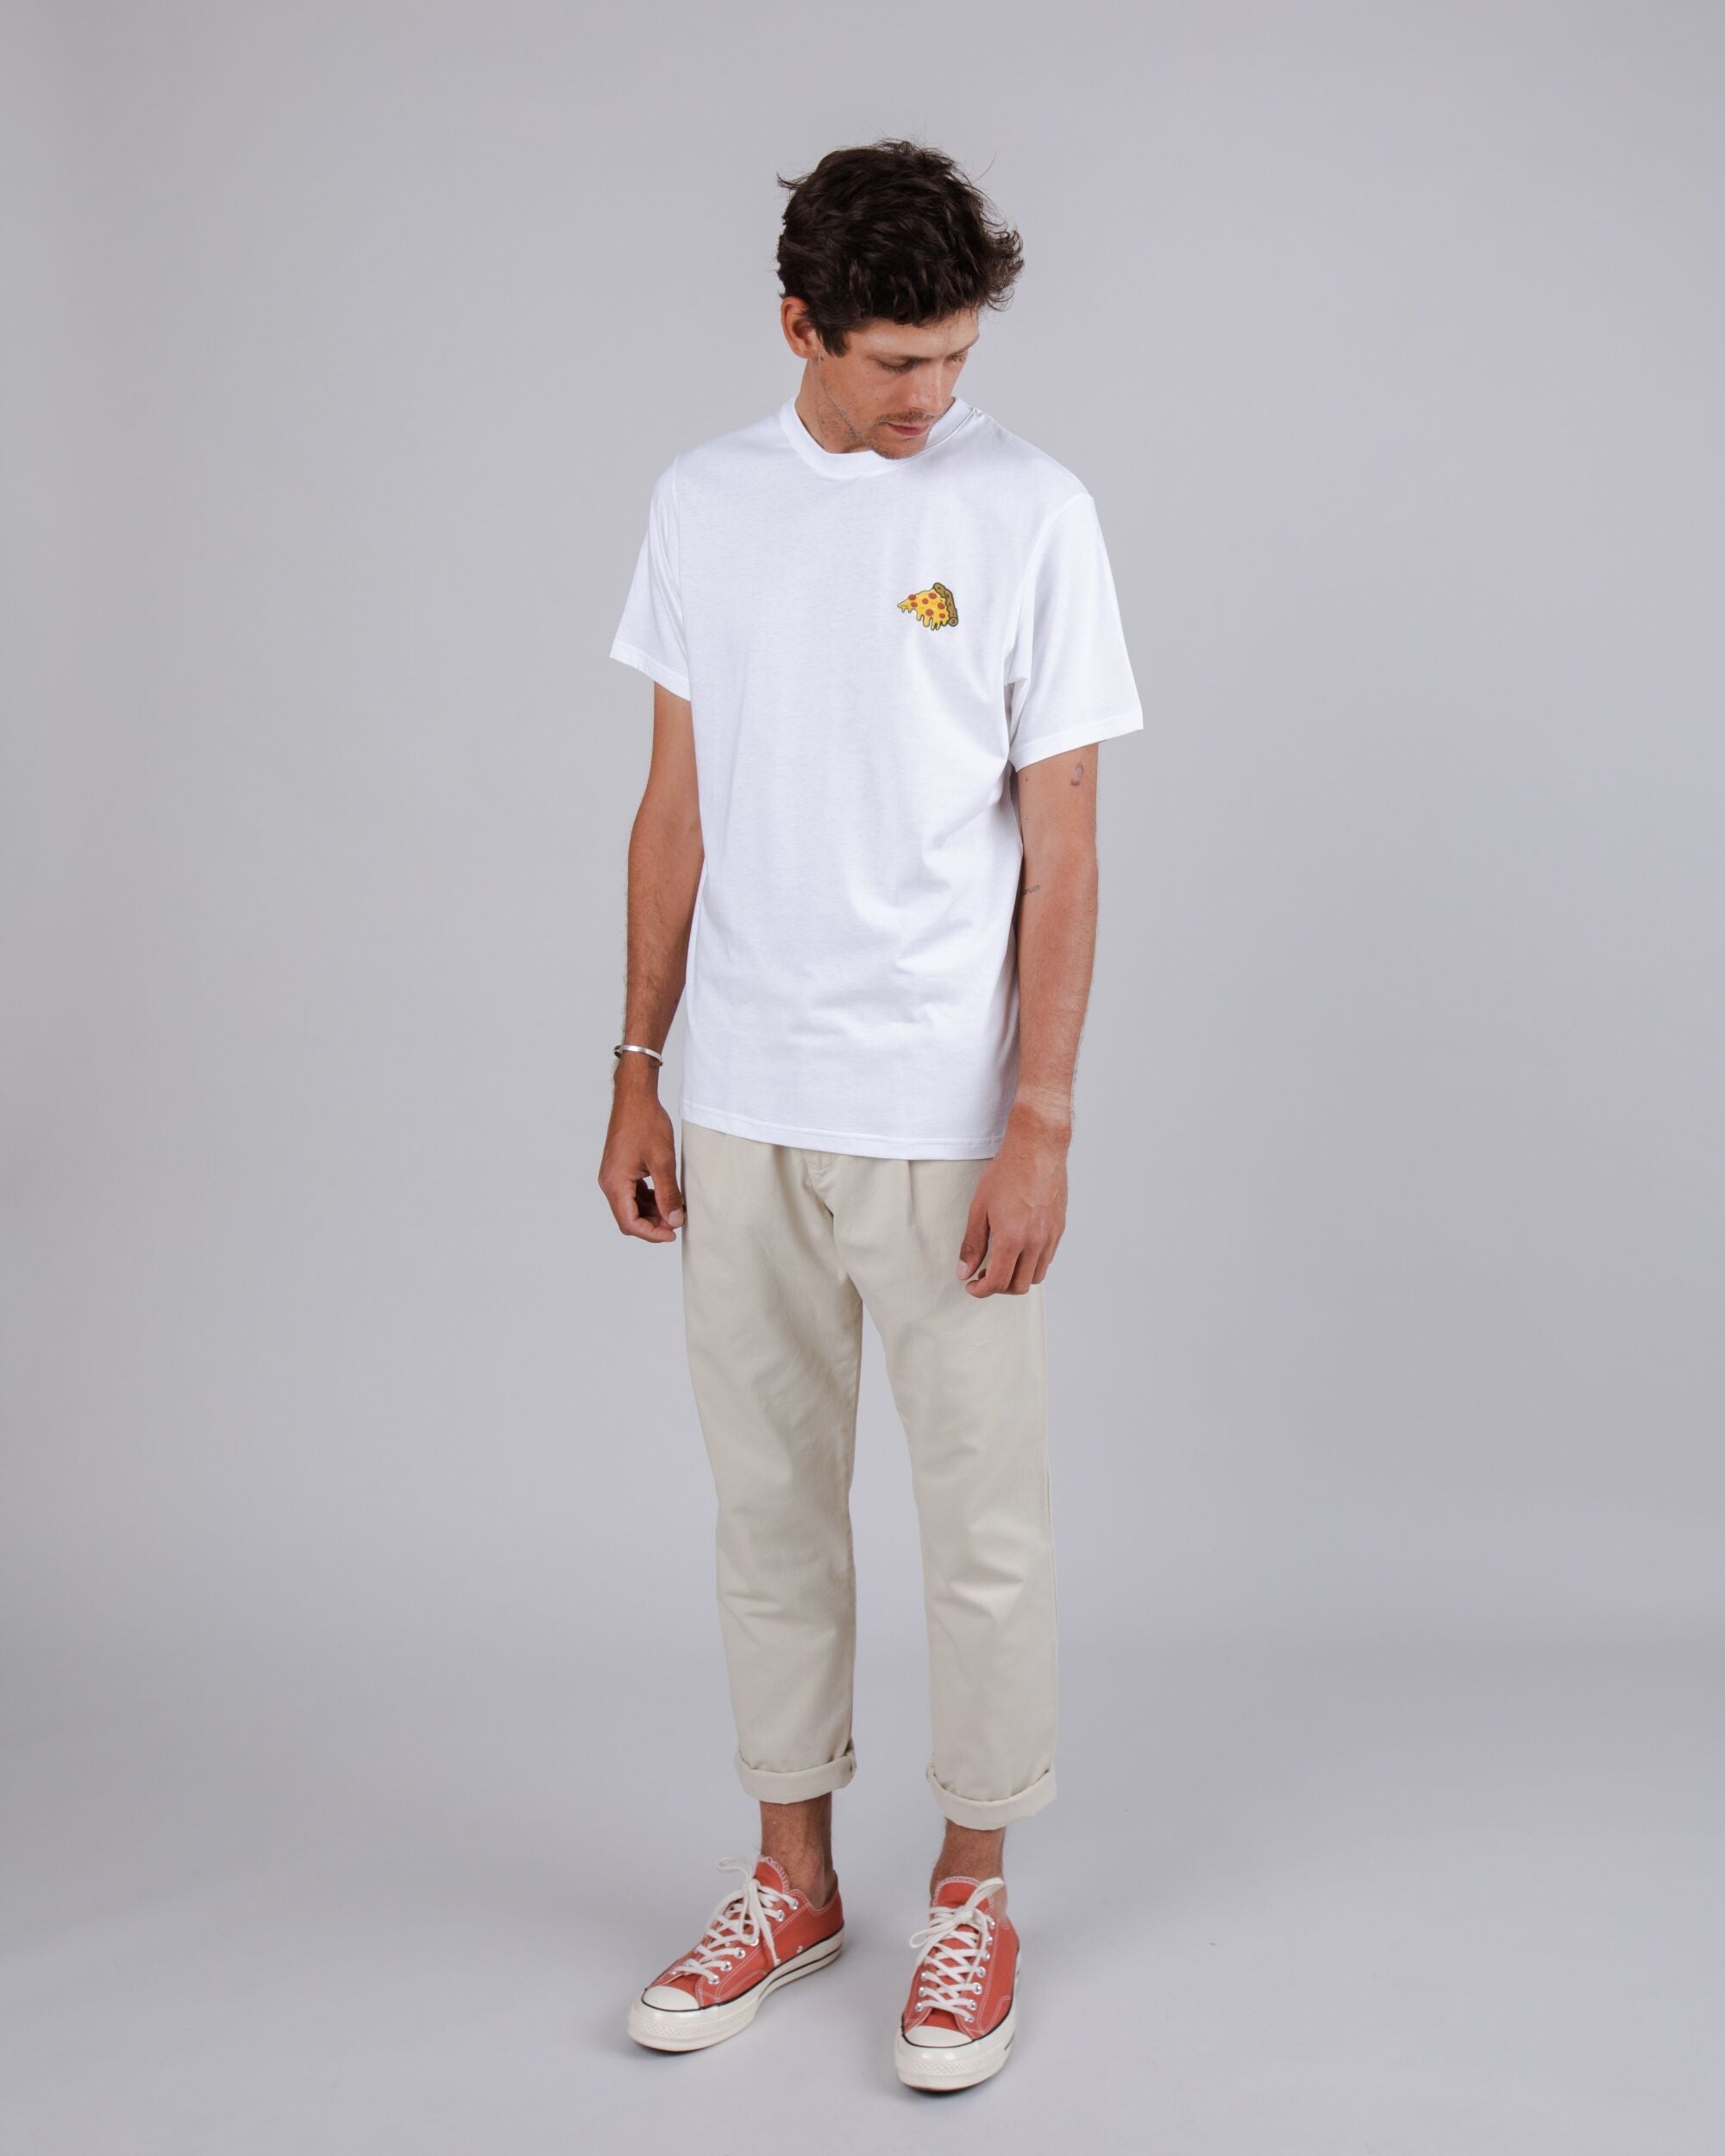 Weisses, bedrucktes T-Shirt Ornamante aus 100% Bio-Baumwolle von Brava Fabrics